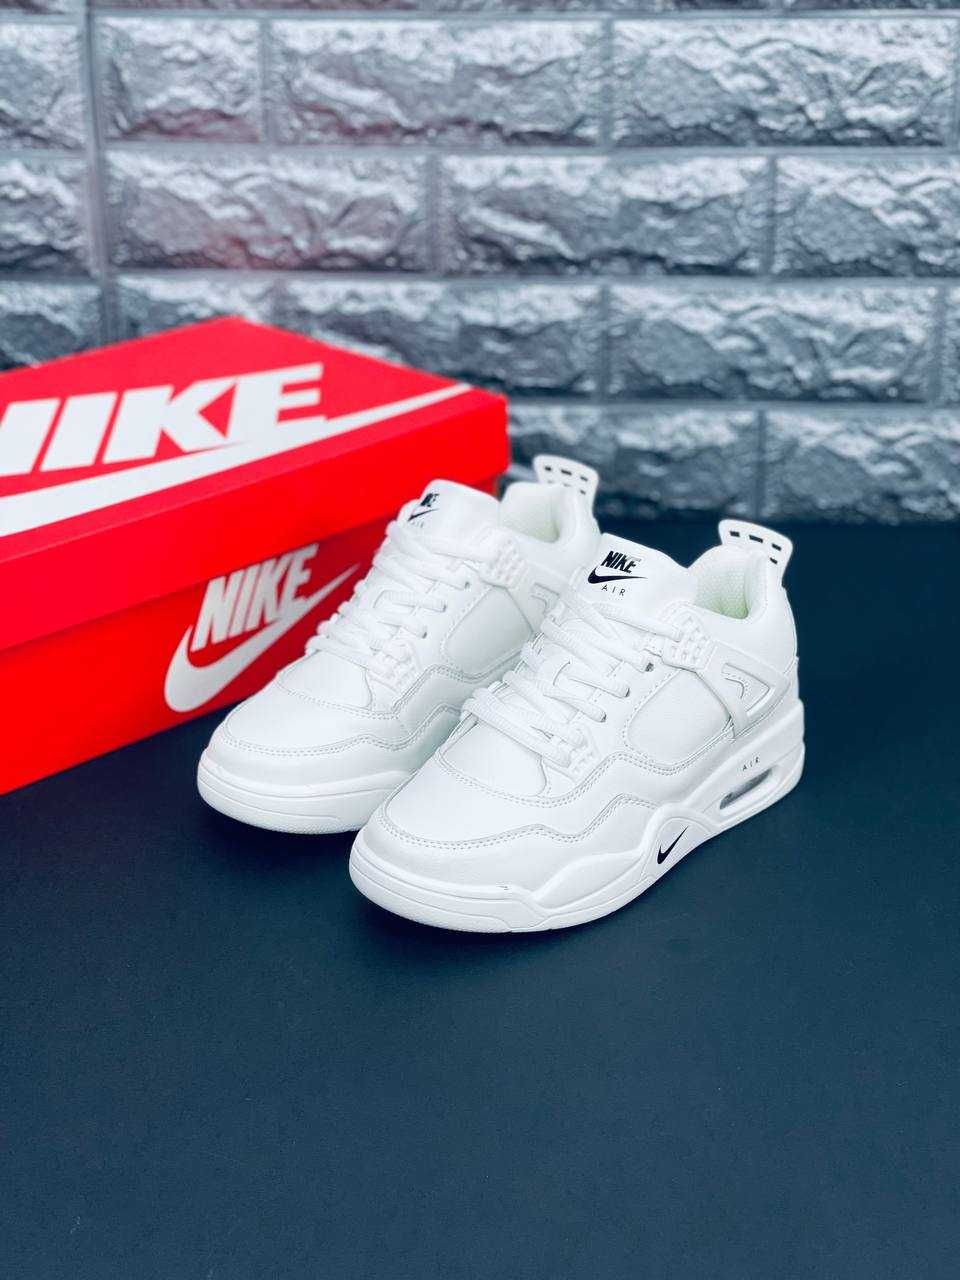 Кроссовки Nike Air Jordan Белые 4 Retro кожаные кросовки Найк Аура 24